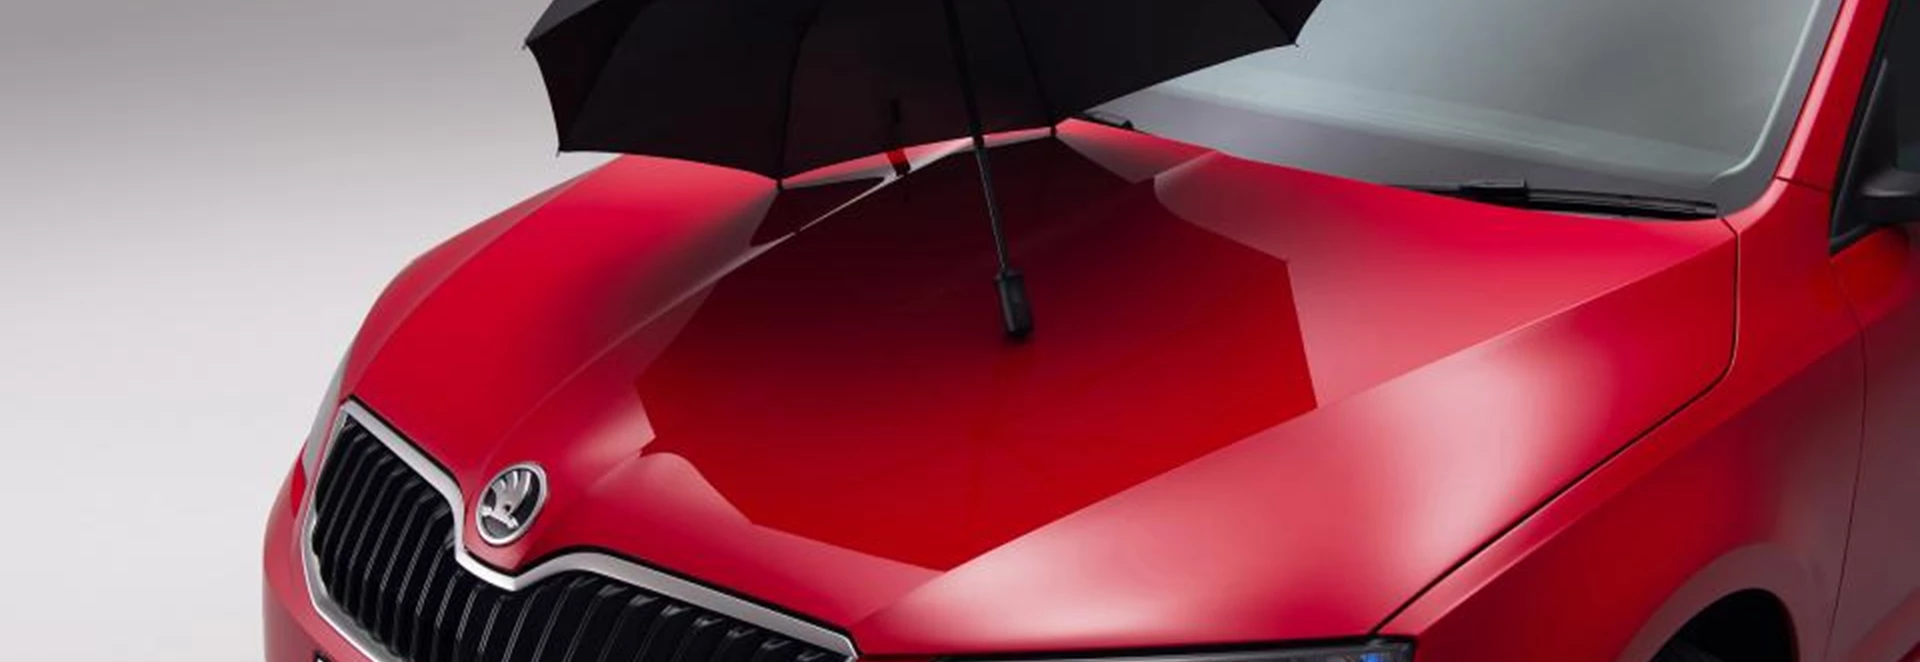 More Skoda cars to get built-in umbrellas